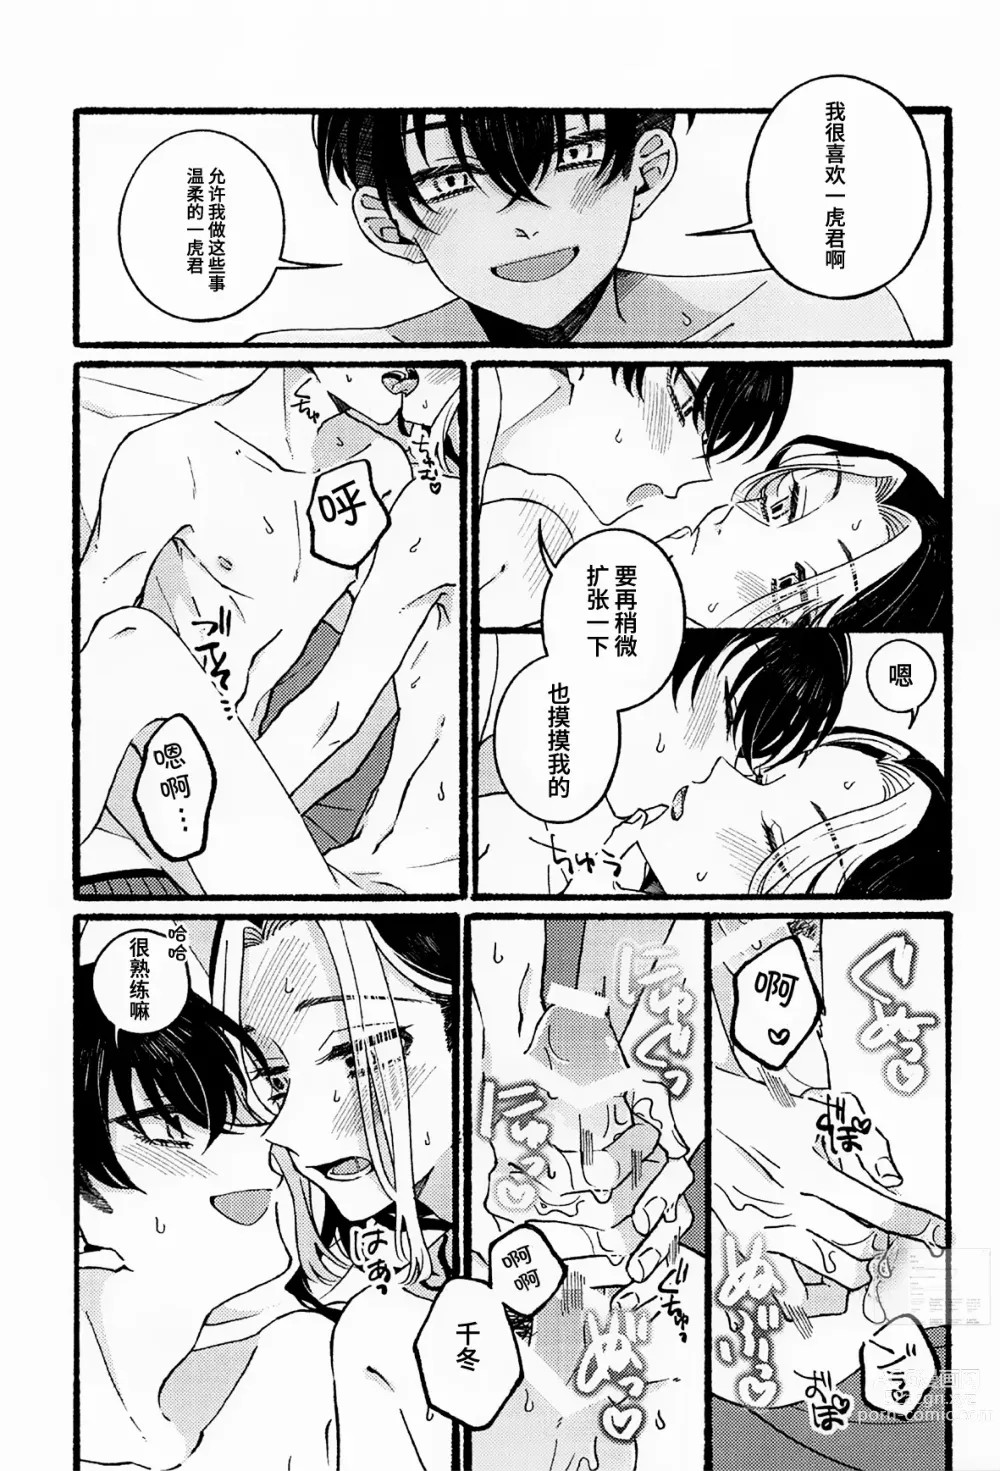 Page 24 of doujinshi BREAK! BREAK! BREAK!